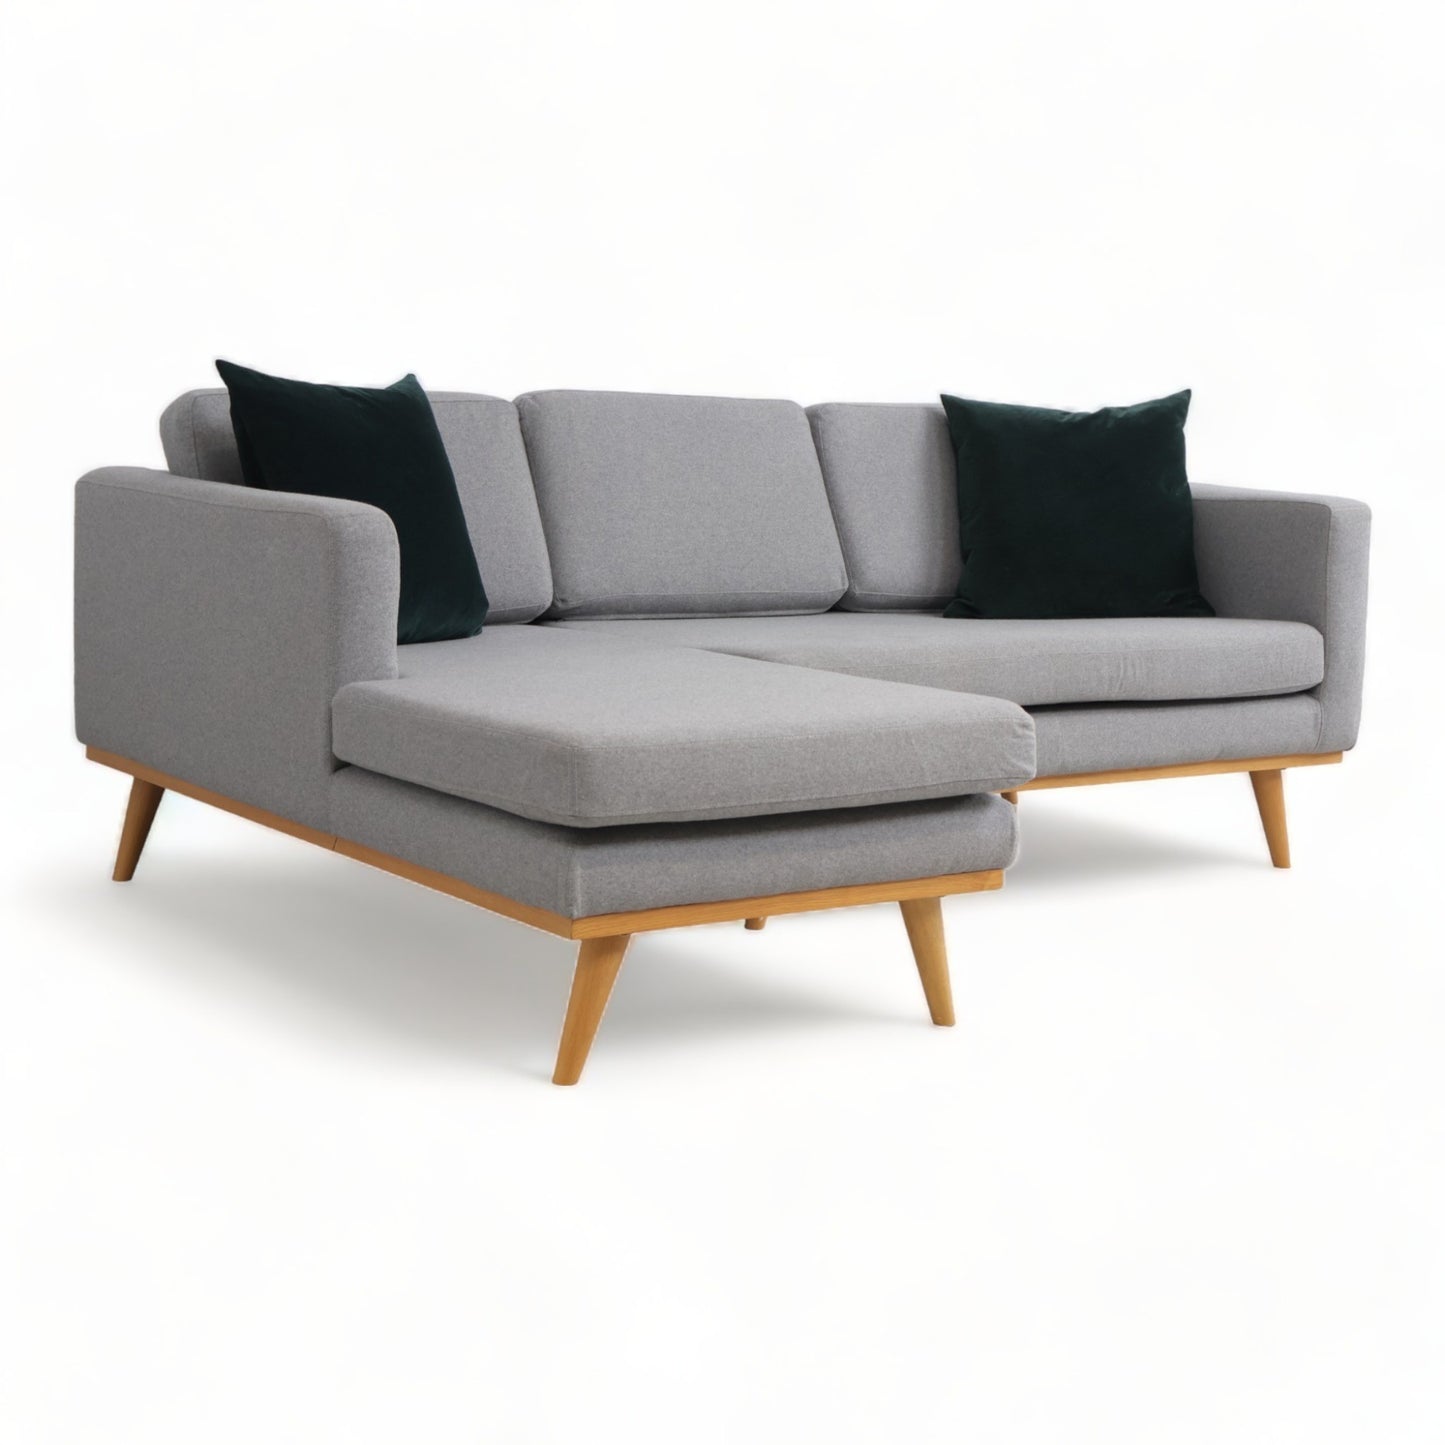 Nyrenset | Johan sofa med sjeselong fra SofaCompany